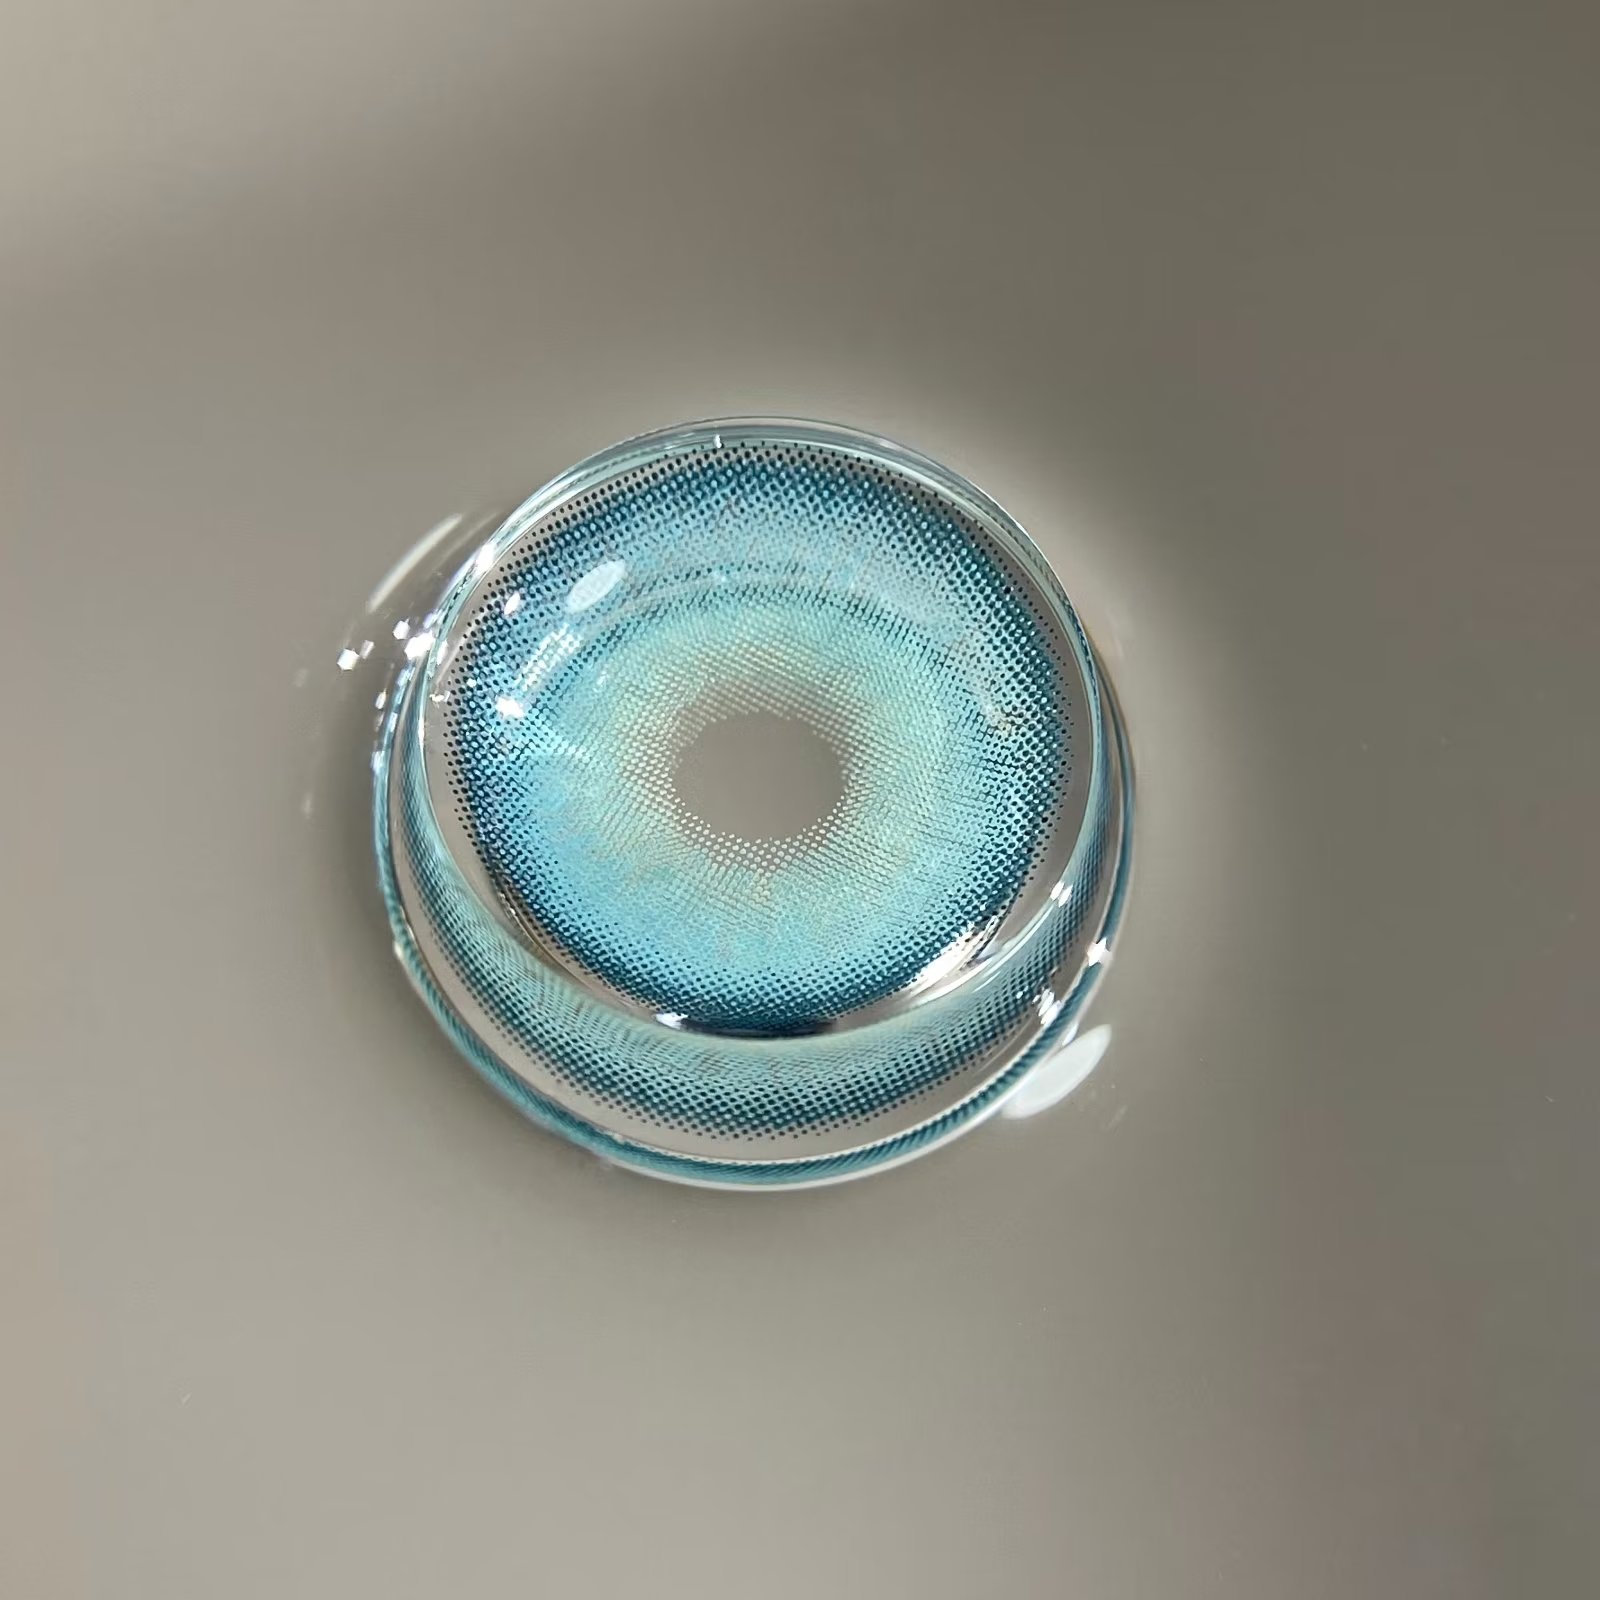 ALLECON 年抛隐形眼镜 蔚蓝冰川 14.0mm 1副/2片 左右度数可不同 - VVCON美瞳网